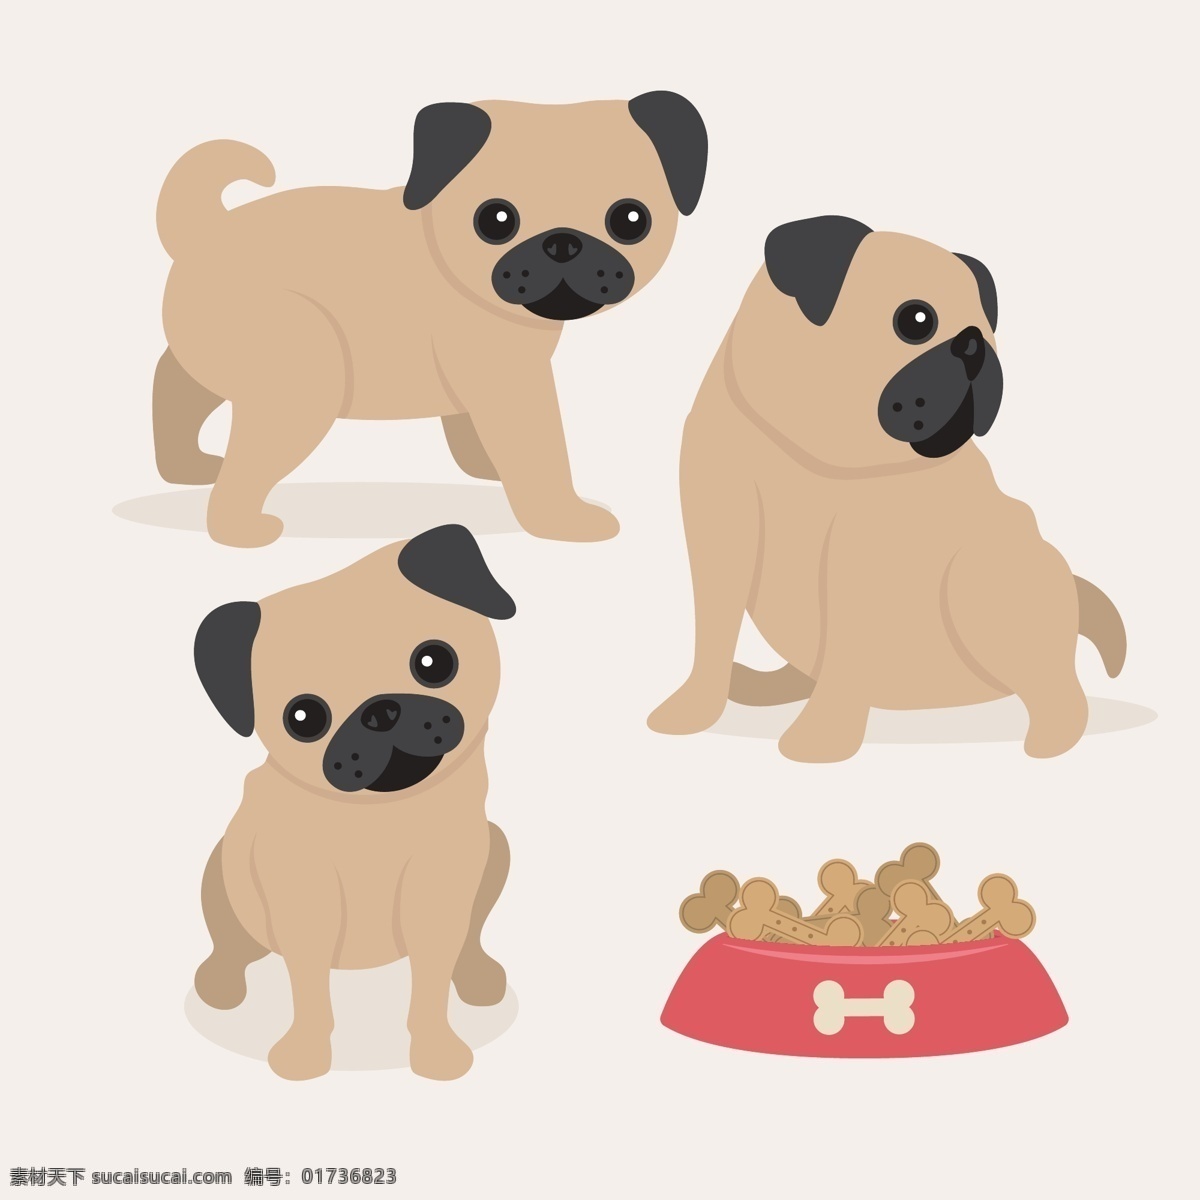 插画 柴犬 动物 狗 狗粮 卡通 卡通狗 可爱 可爱宠物 犬 手绘 棕色 不同 姿势 的卡 通